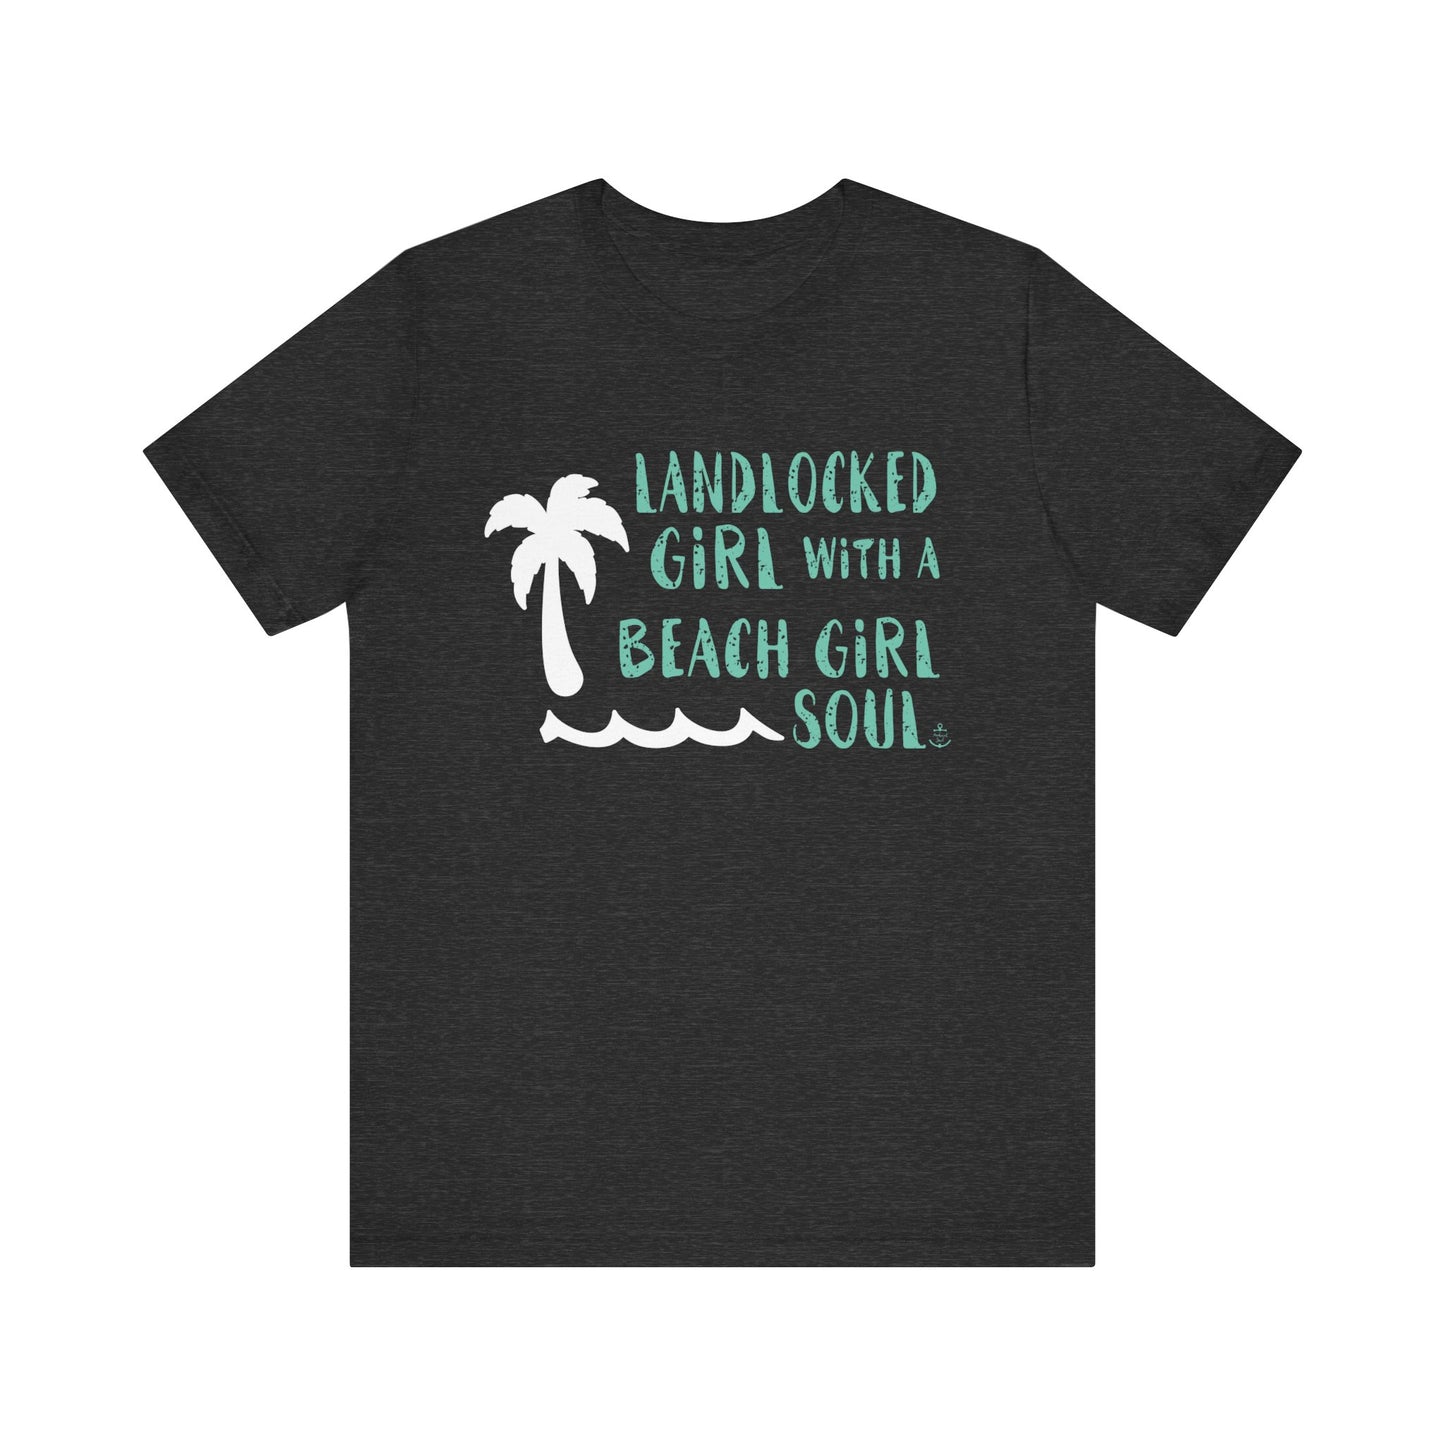 Landlocked girl tshirt, Dark Gray beach tshirt, beach girl, Christmas gift, tshirts for women, Anchored Soul Tshirt